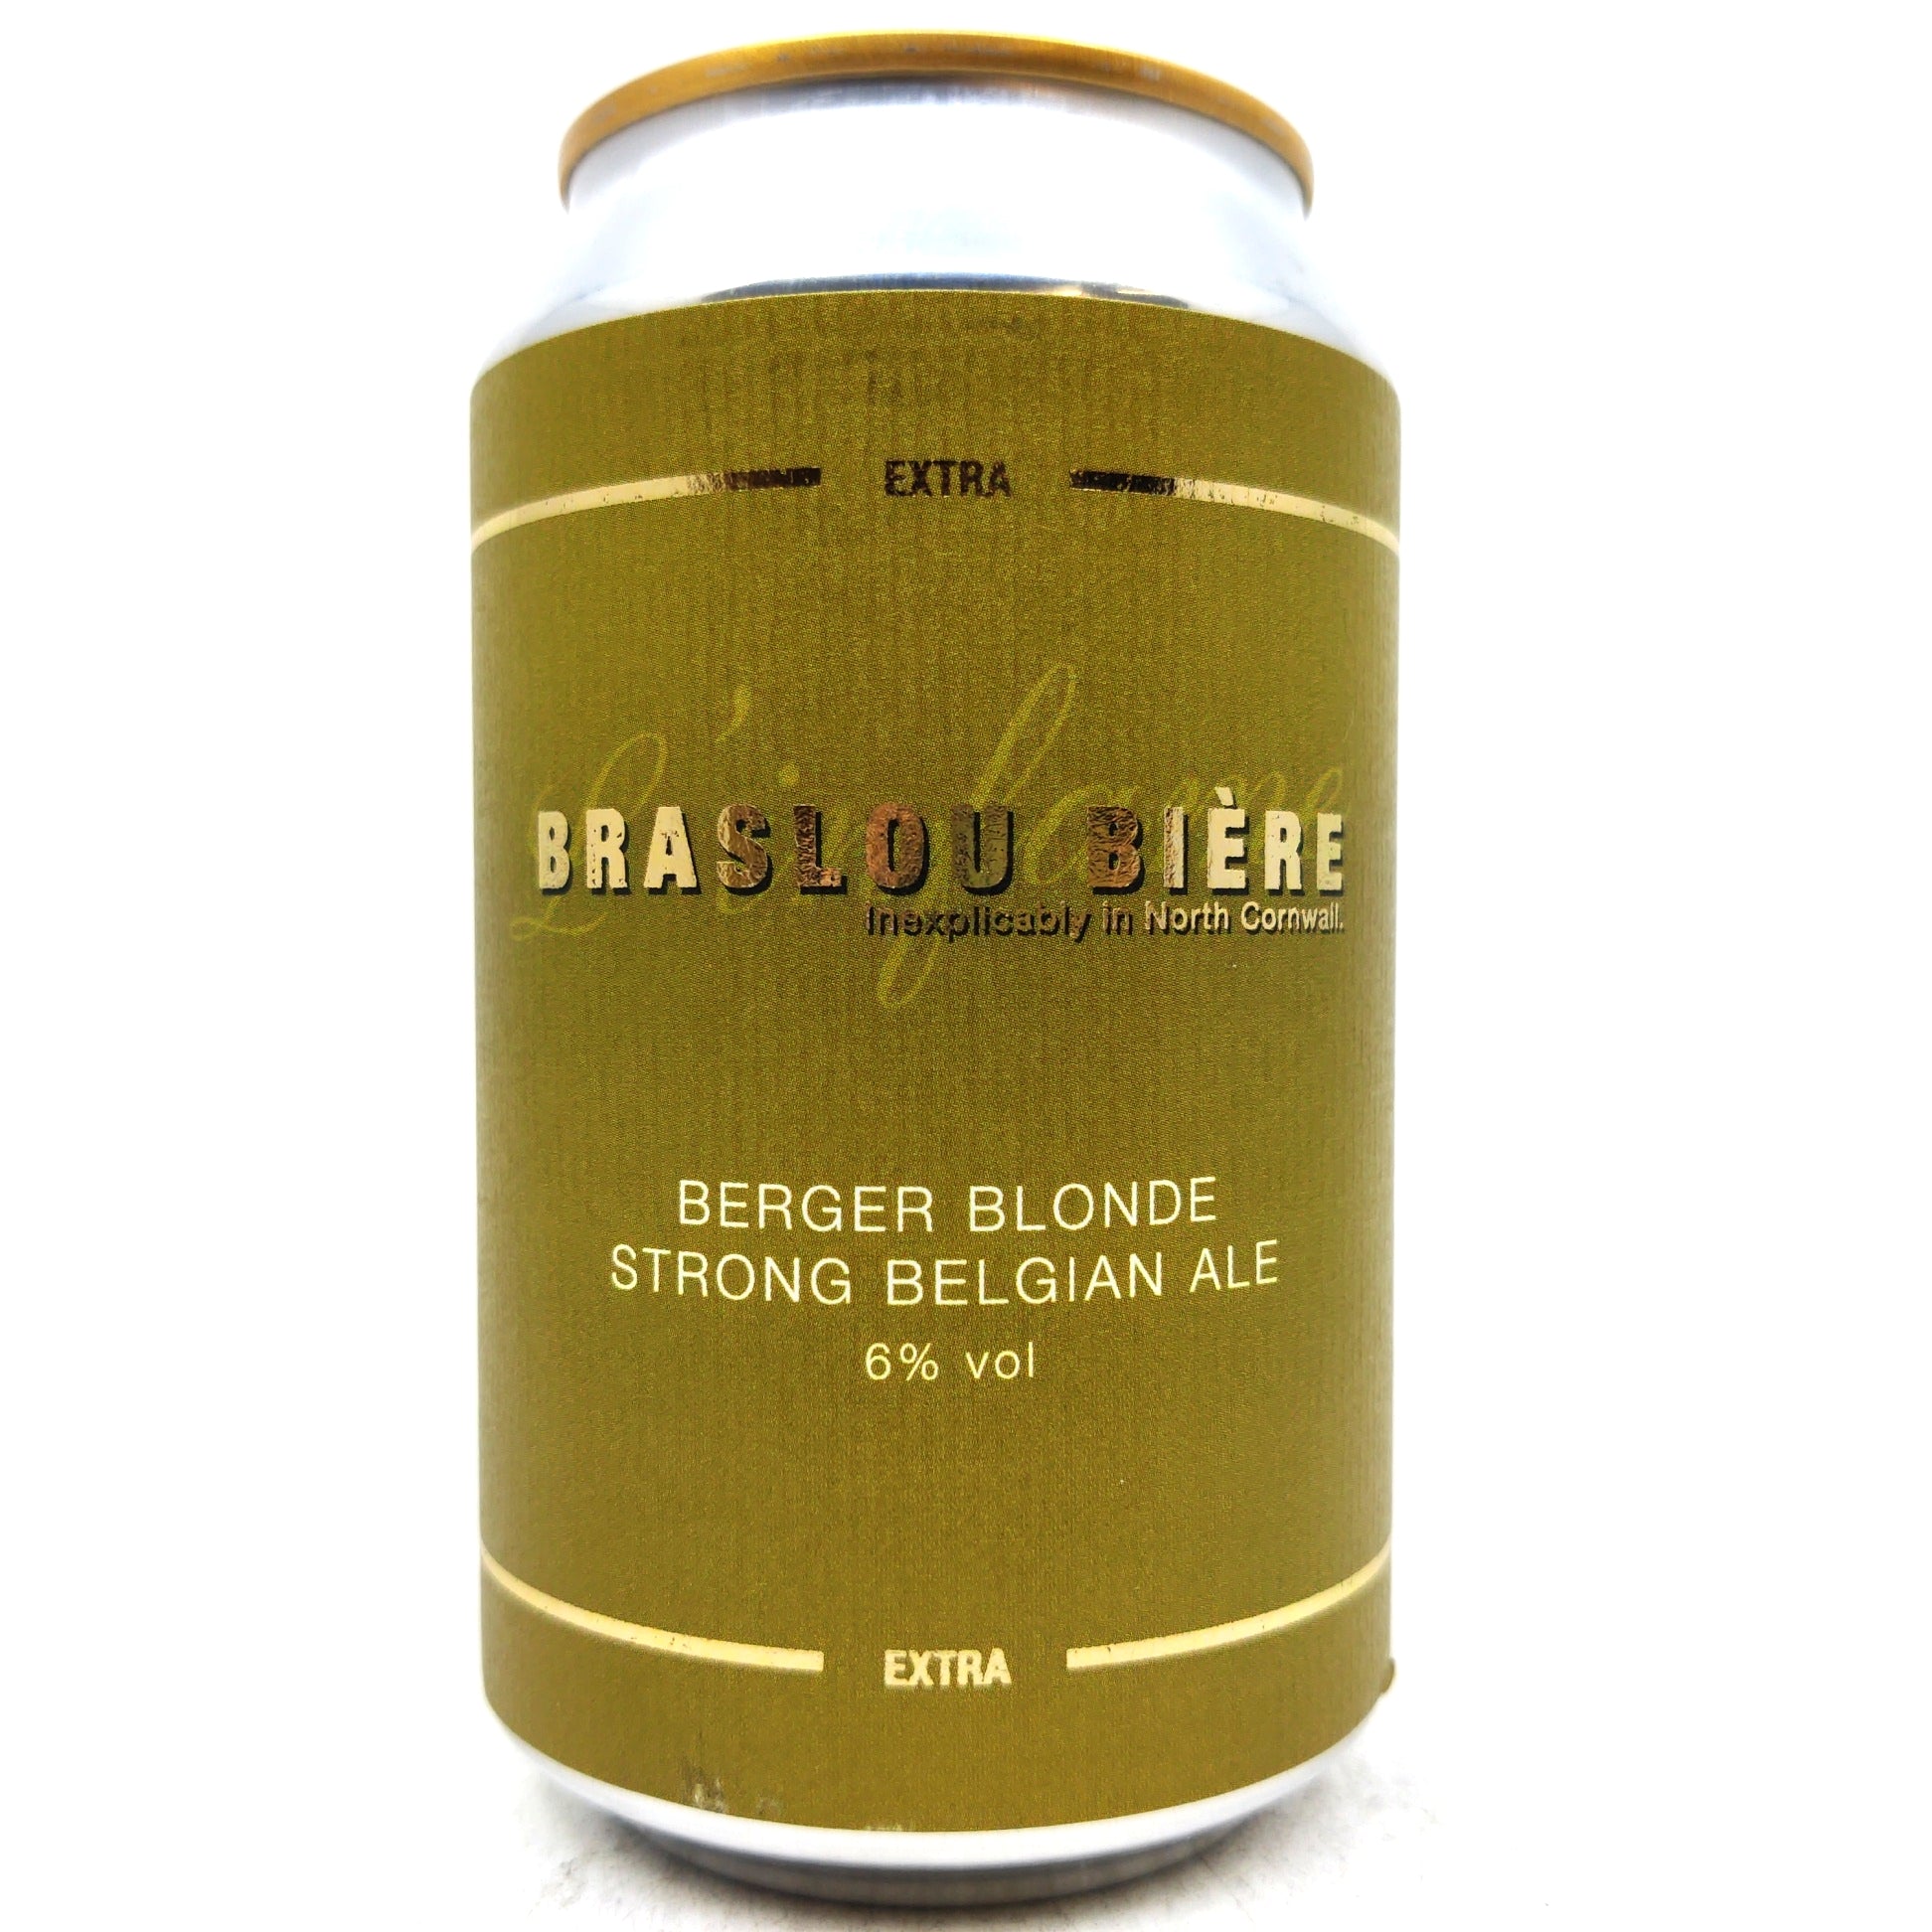 Braslou Biere Berger Blonde Strong Belgian Ale 6% (330ml can)-Hop Burns & Black